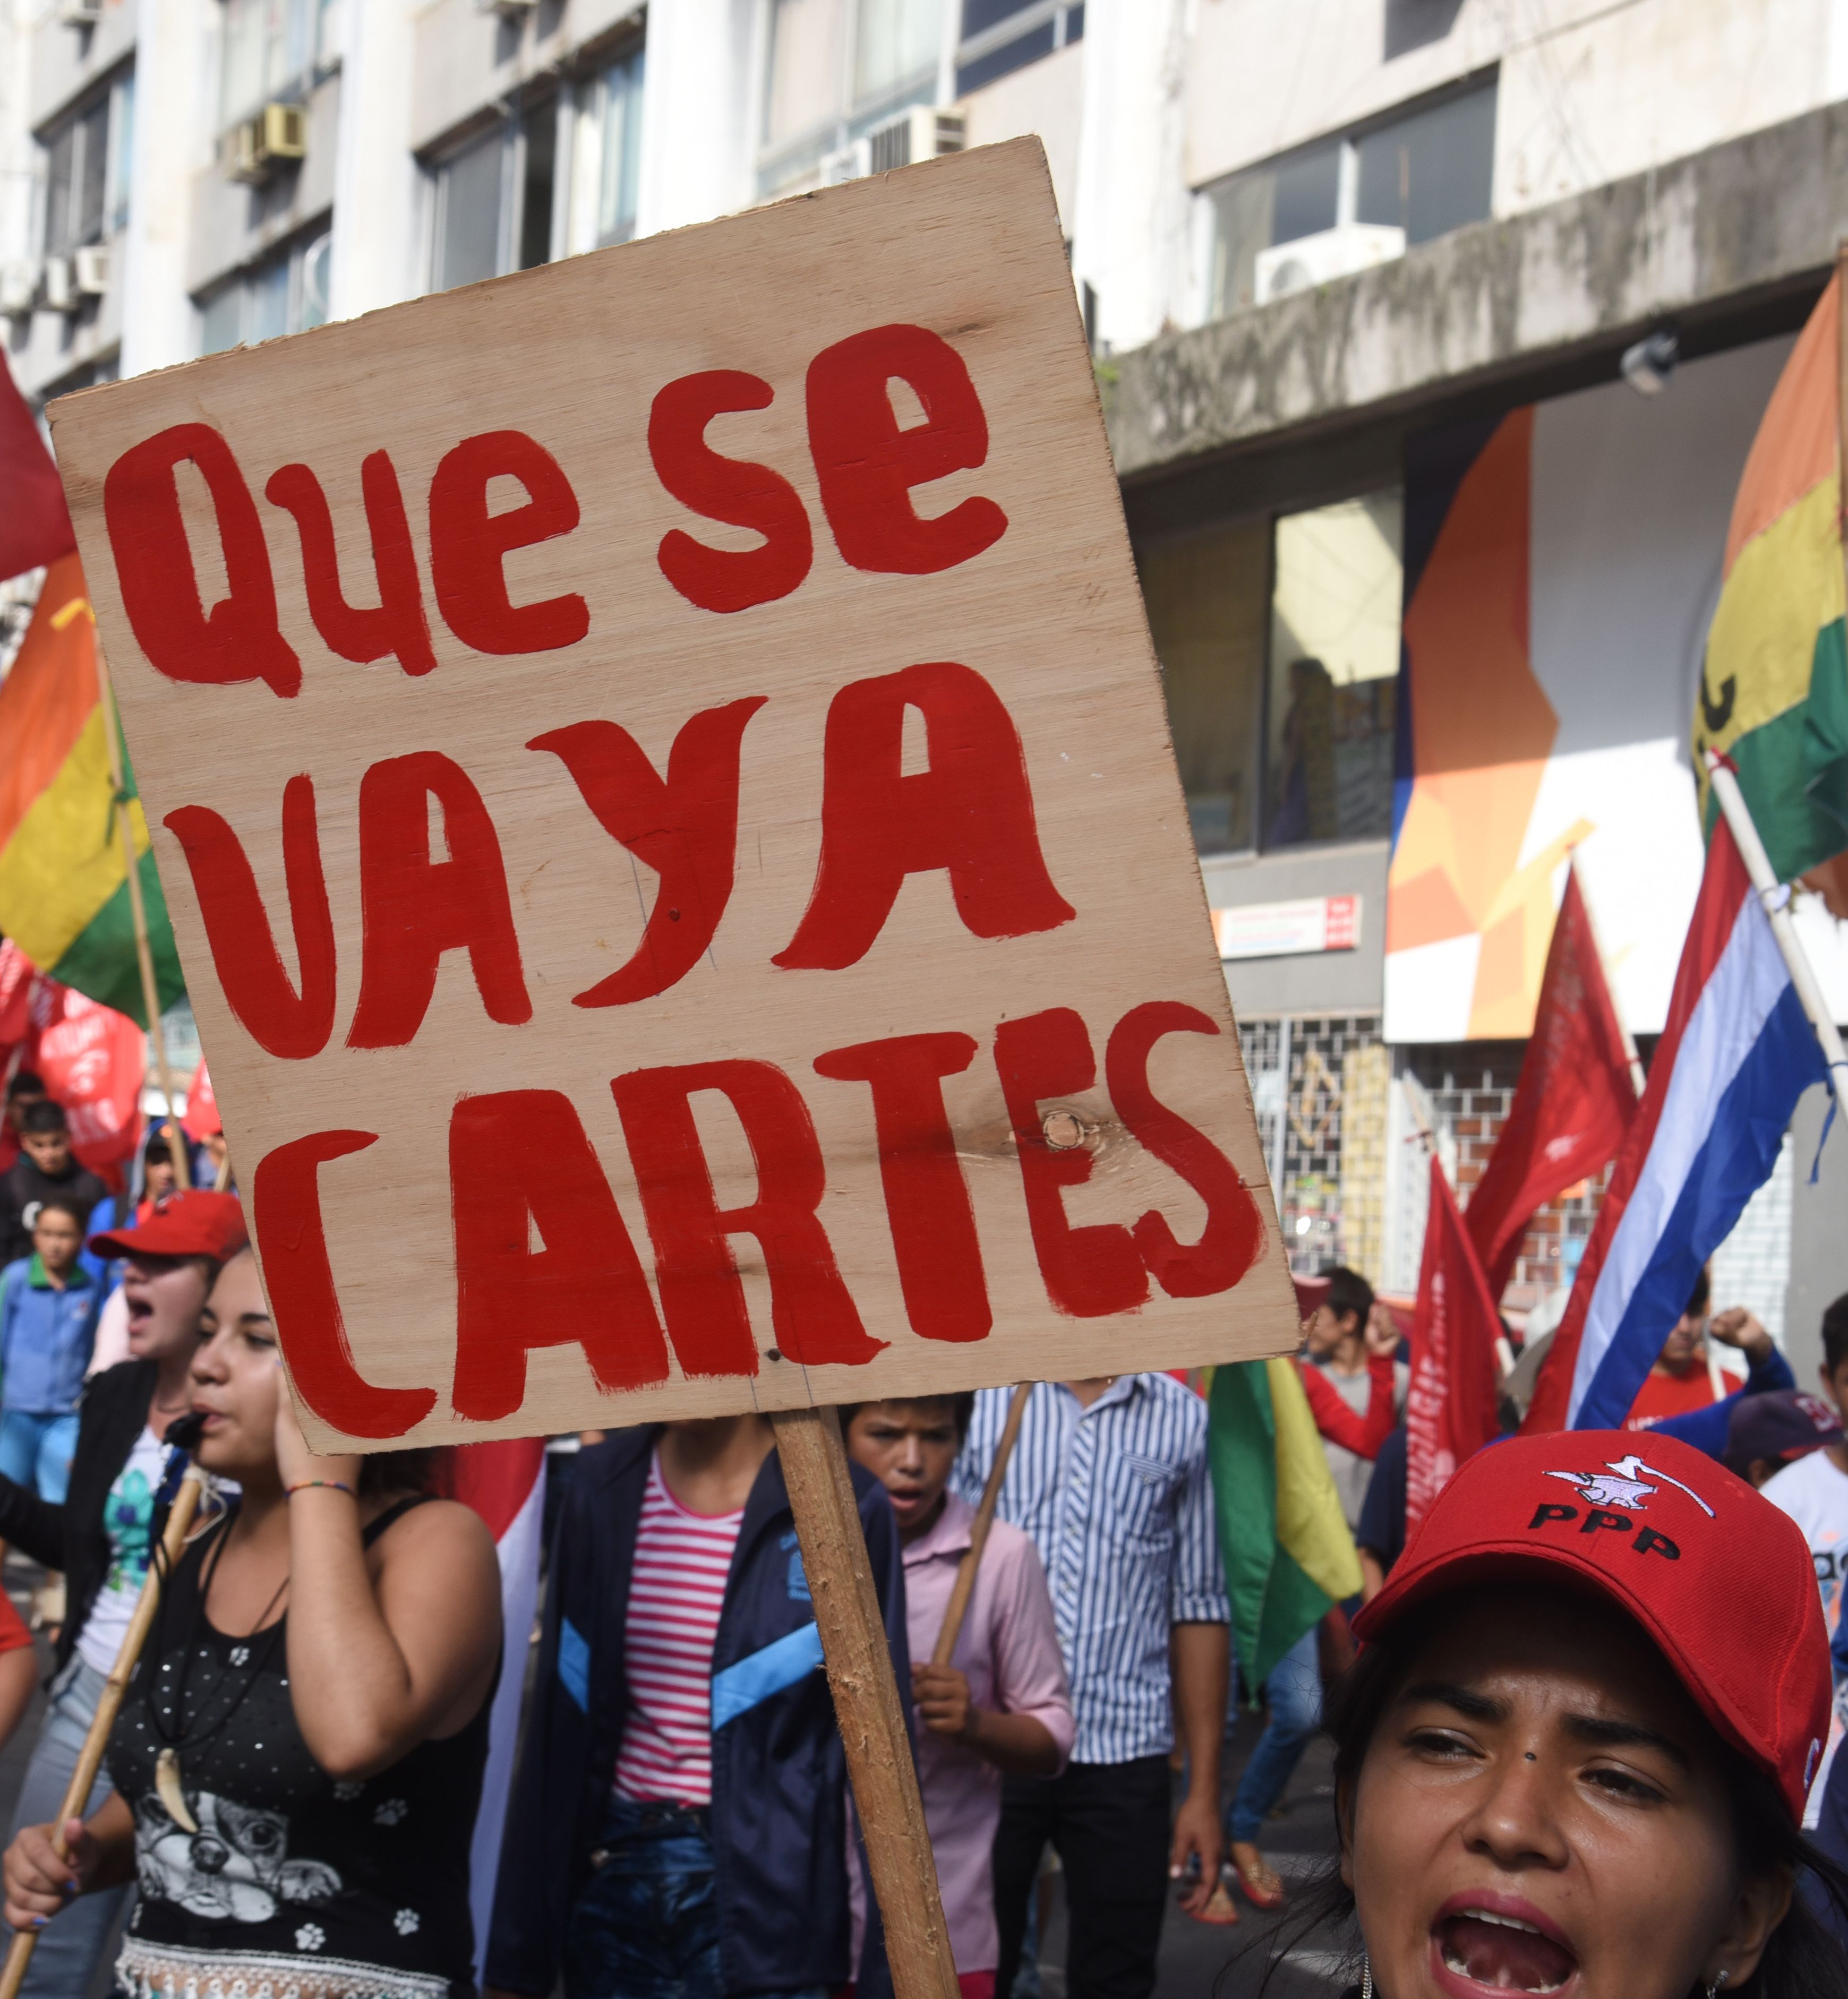 تظاهرة تطالب باستقالة رئيس باراجواي